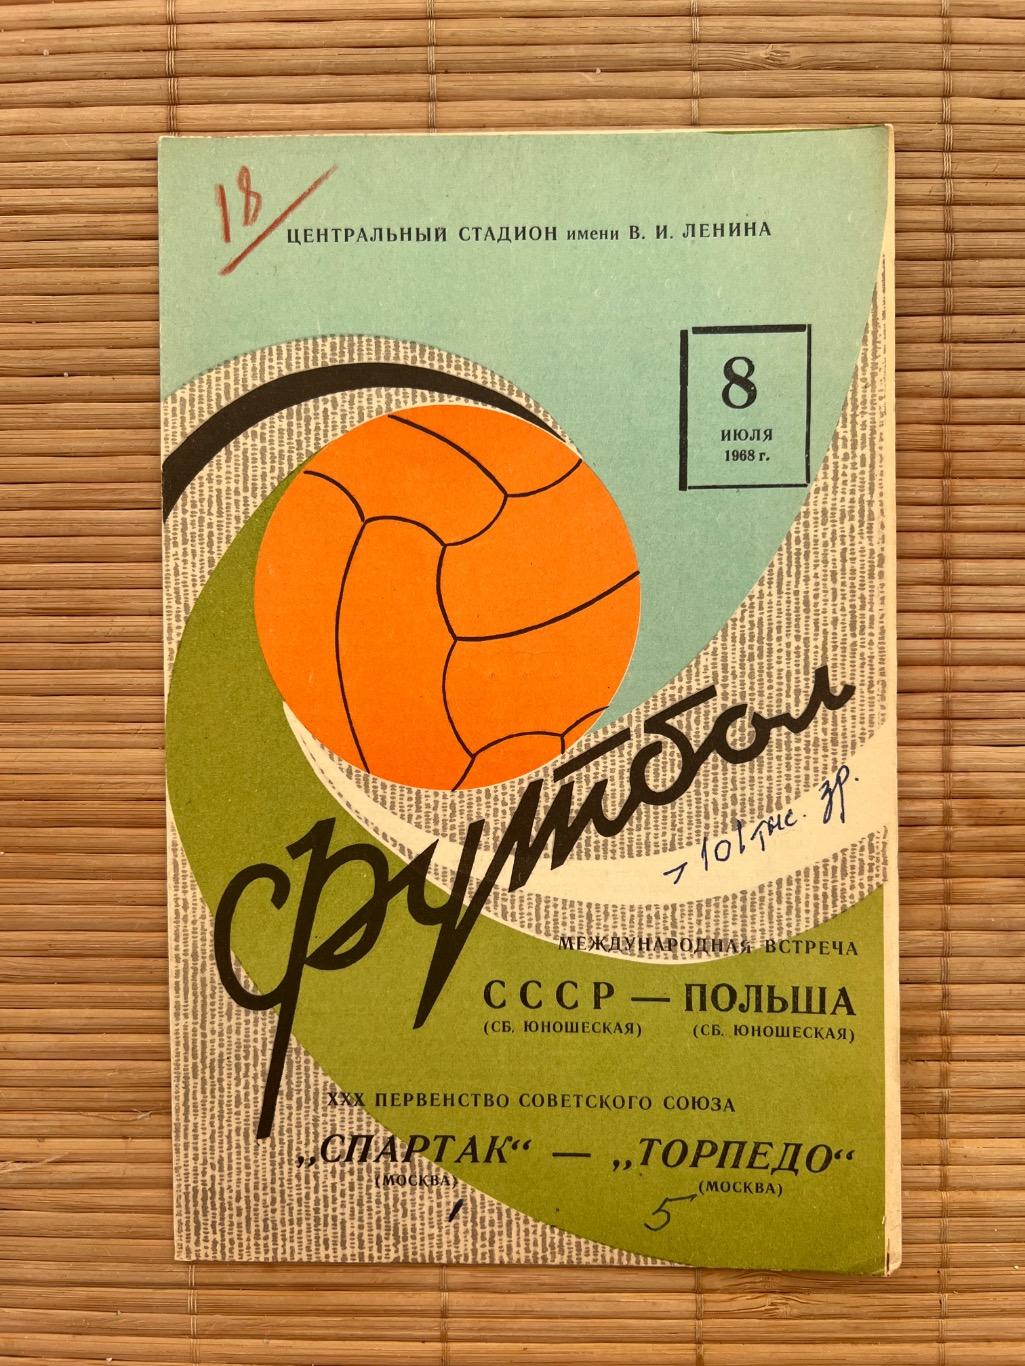 Спартак Москва - Торпедо москва 08.07.1968